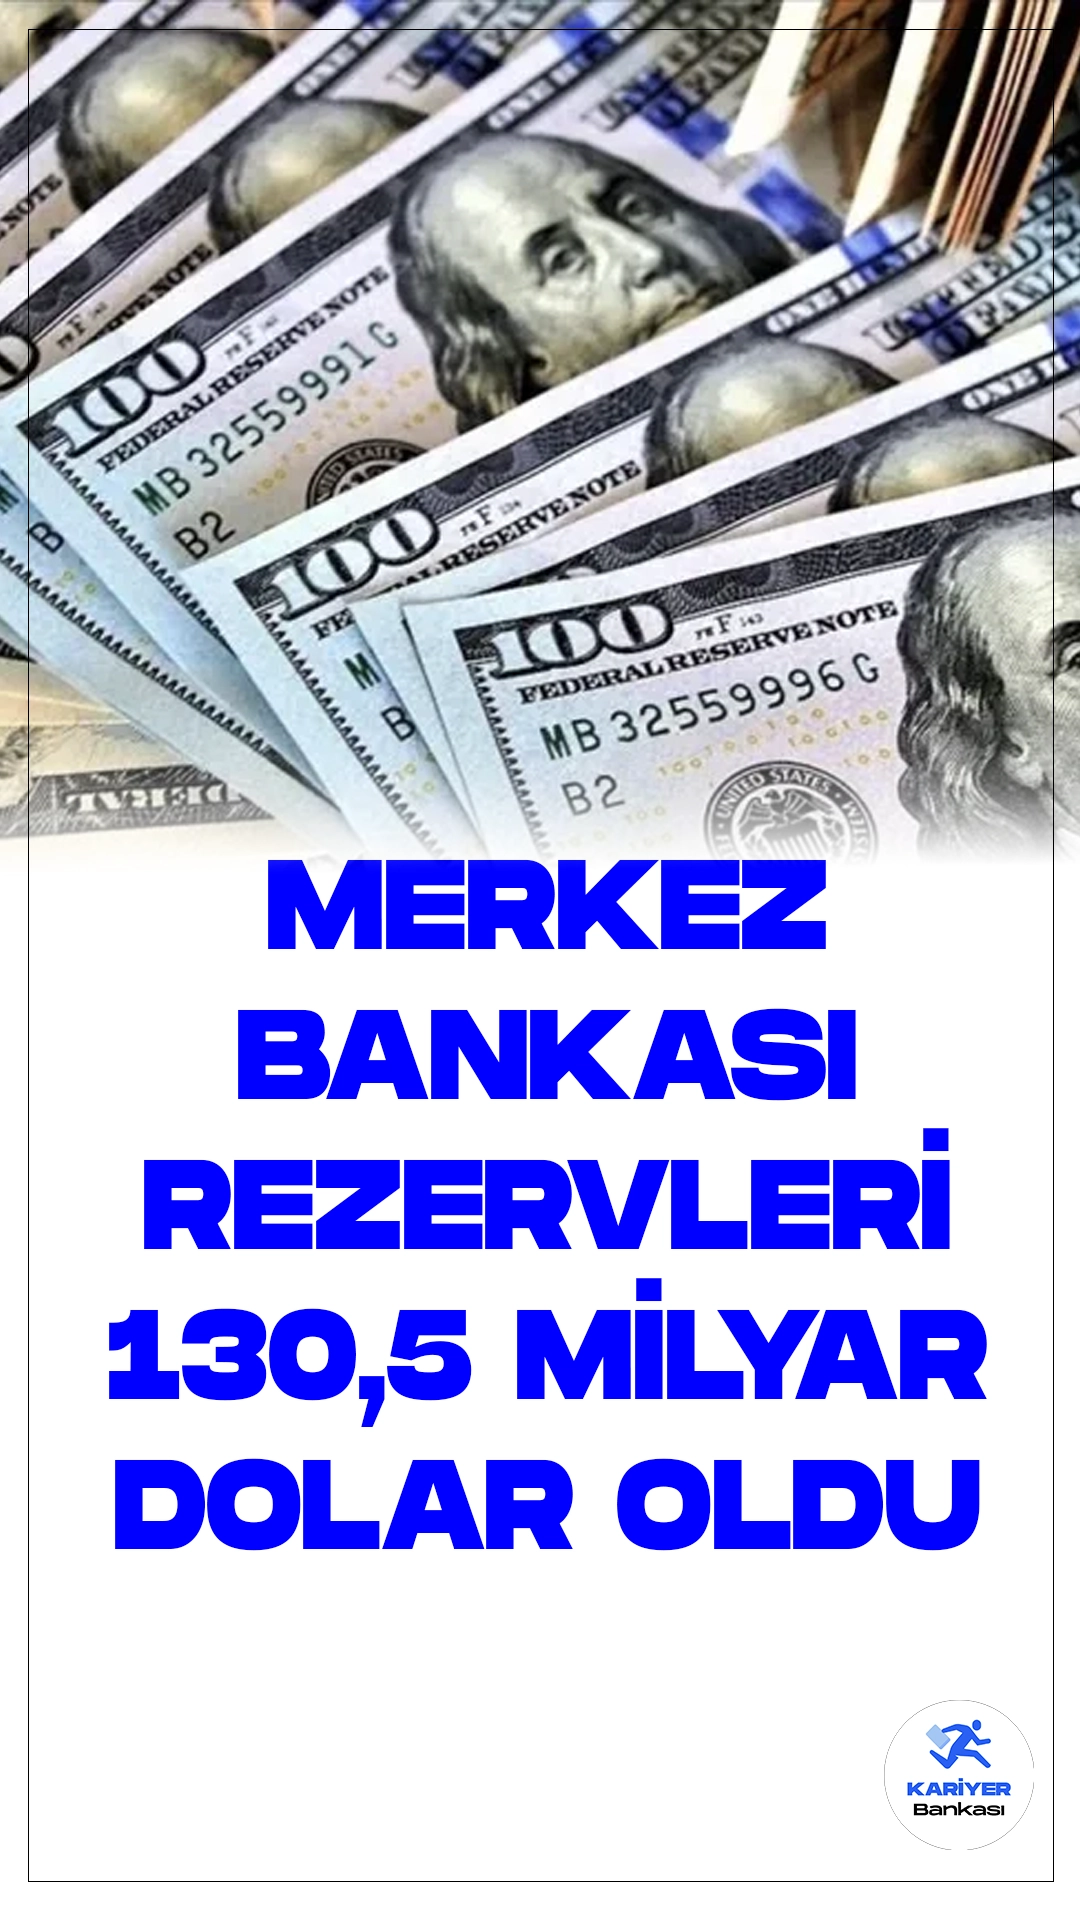 Merkez Bankası Rezervleri 130,5 Milyar Dolar Oldu.Türkiye Cumhuriyet Merkez Bankası'nın (TCMB) haftalık para ve banka istatistikleri açıklandı. 8 Mart haftasında TCMB'nin toplam rezervleri, bir önceki haftaya göre 386 milyon dolar azalış göstererek 130 milyar 533 milyon dolara geriledi. Bu azalışta dikkat çeken nokta, dolar karşısında yaşanan gerileme oldu.